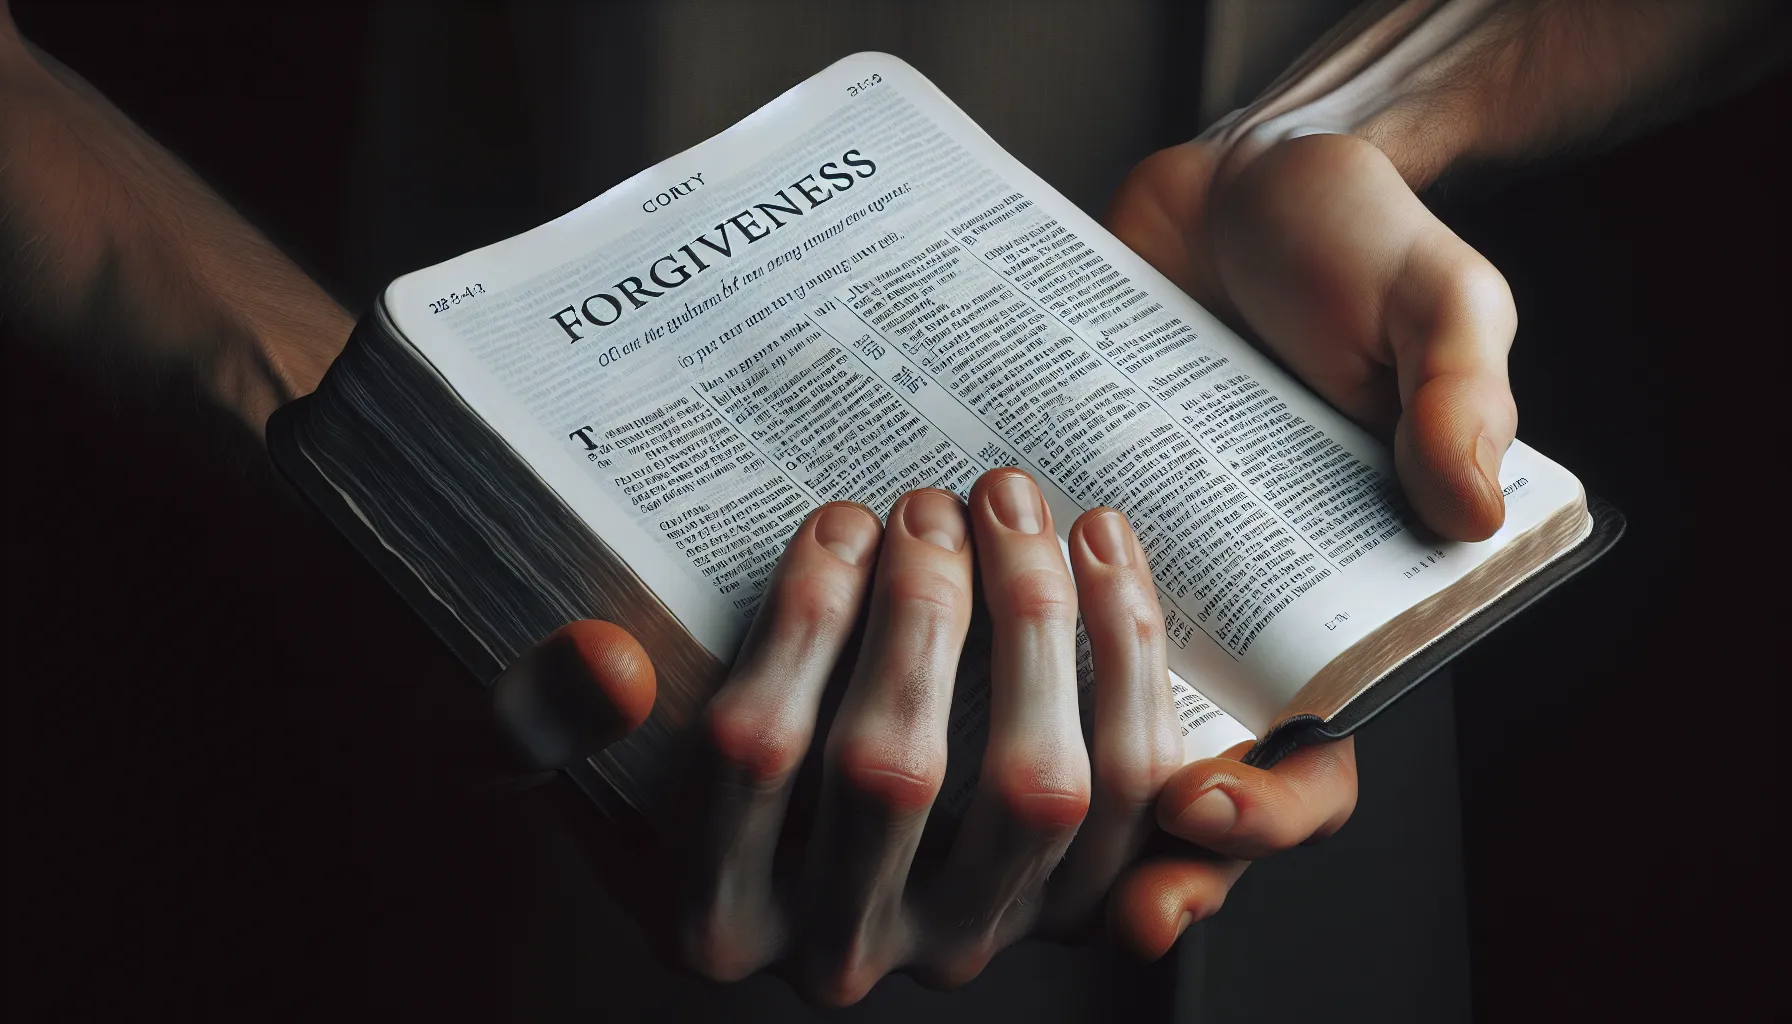 'Una mano sosteniendo una Biblia abierta con una página sobre el perdón. Enfoque en el versículo sobre el perdón y la importancia de practicarlo según las escrituras sagradas.'